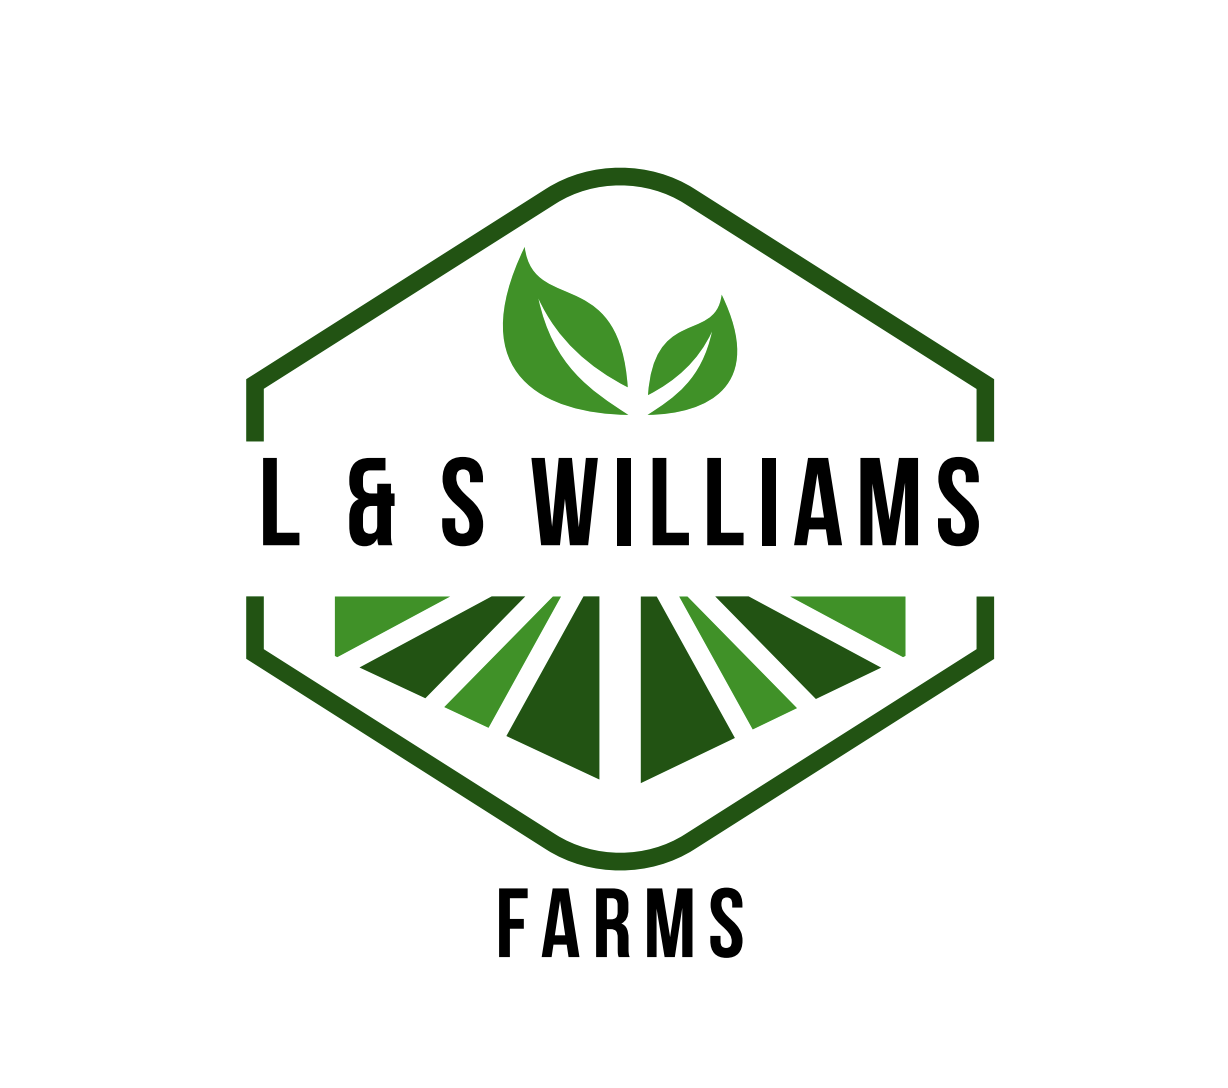 L & S Williams Farms